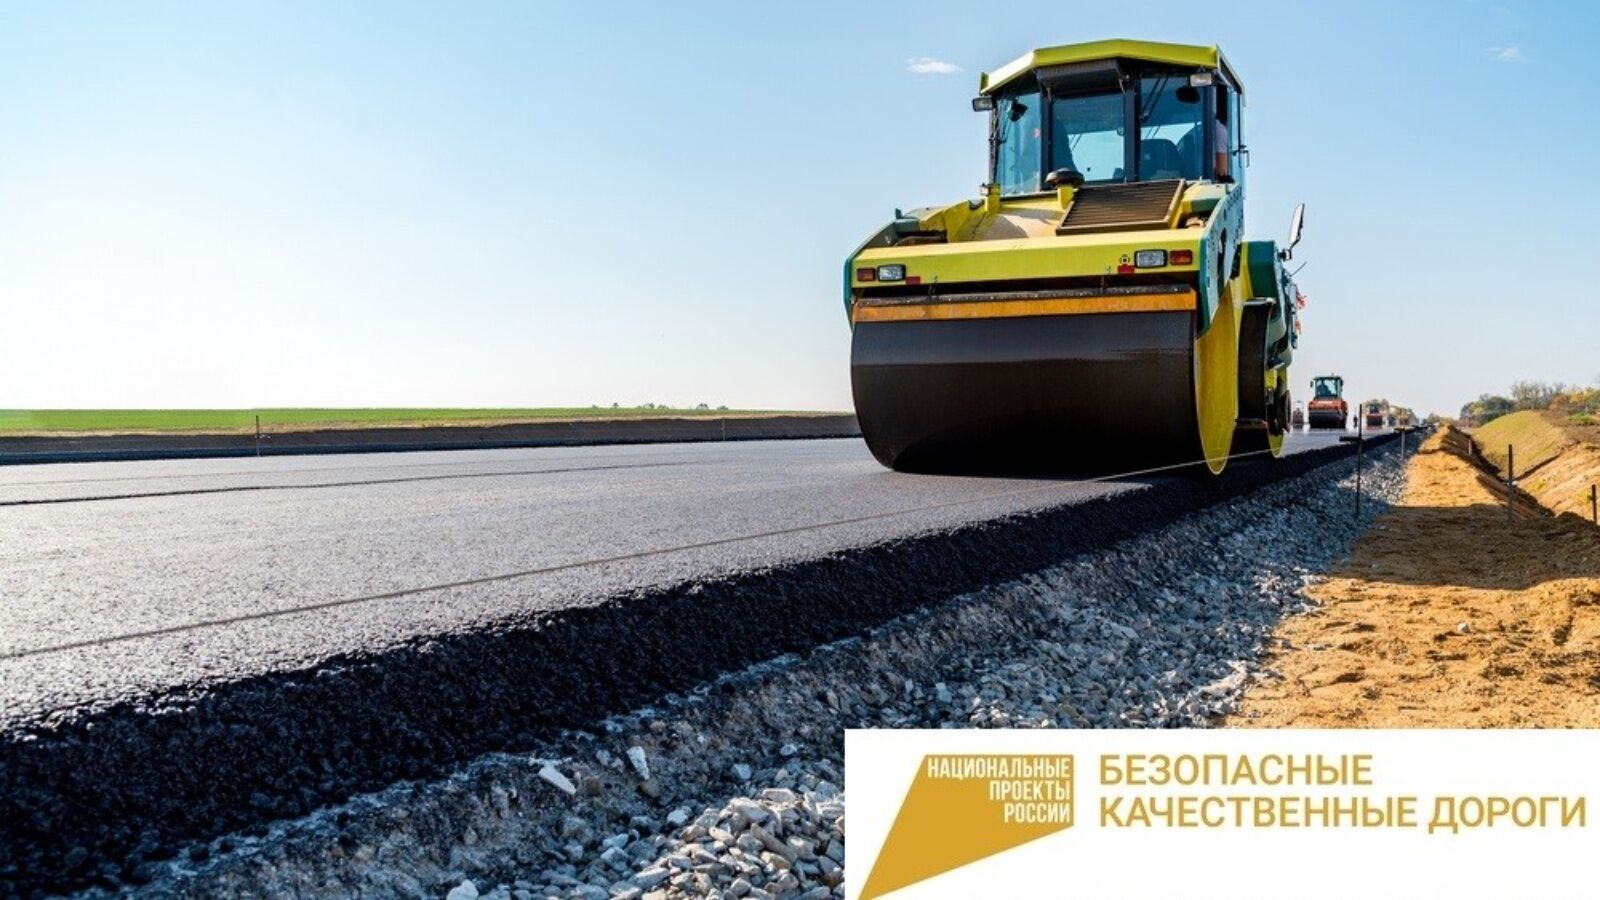 В Татарстане в ходе дорожных работ, проводимых в рамках нацпроекта, планируется применить отечественные материалы и технологии